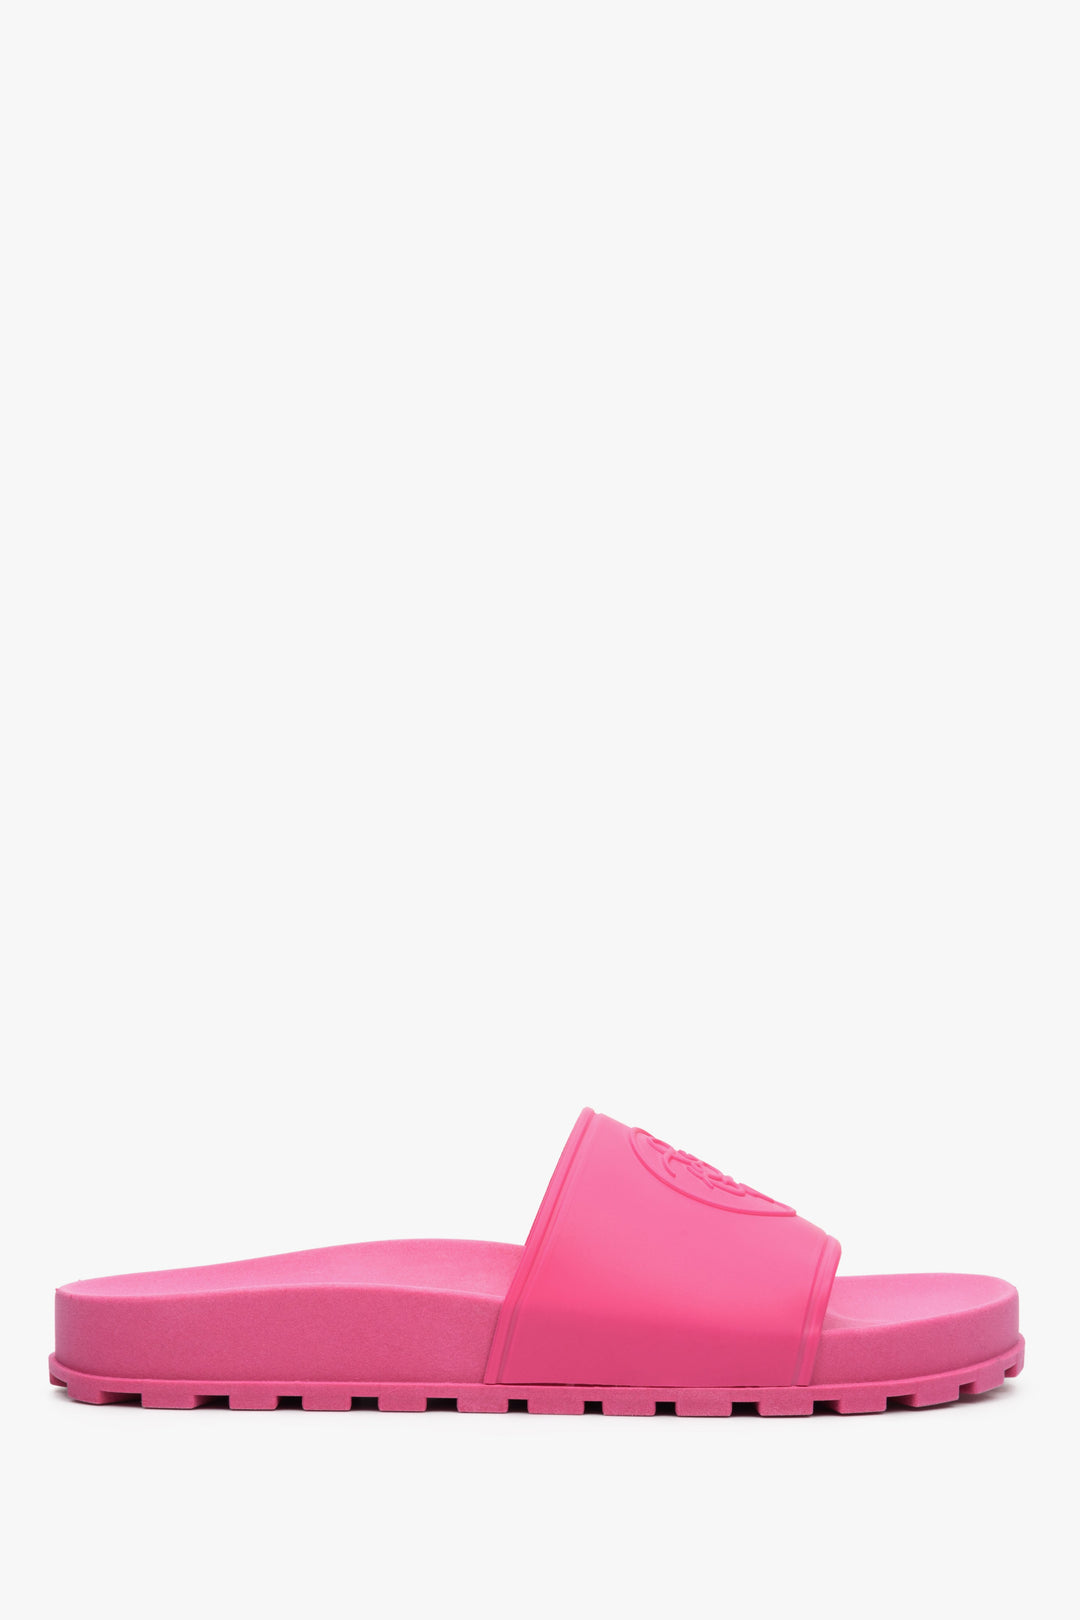 Gumowe klapki damskie Estro w kolorze różowym - profil buta.